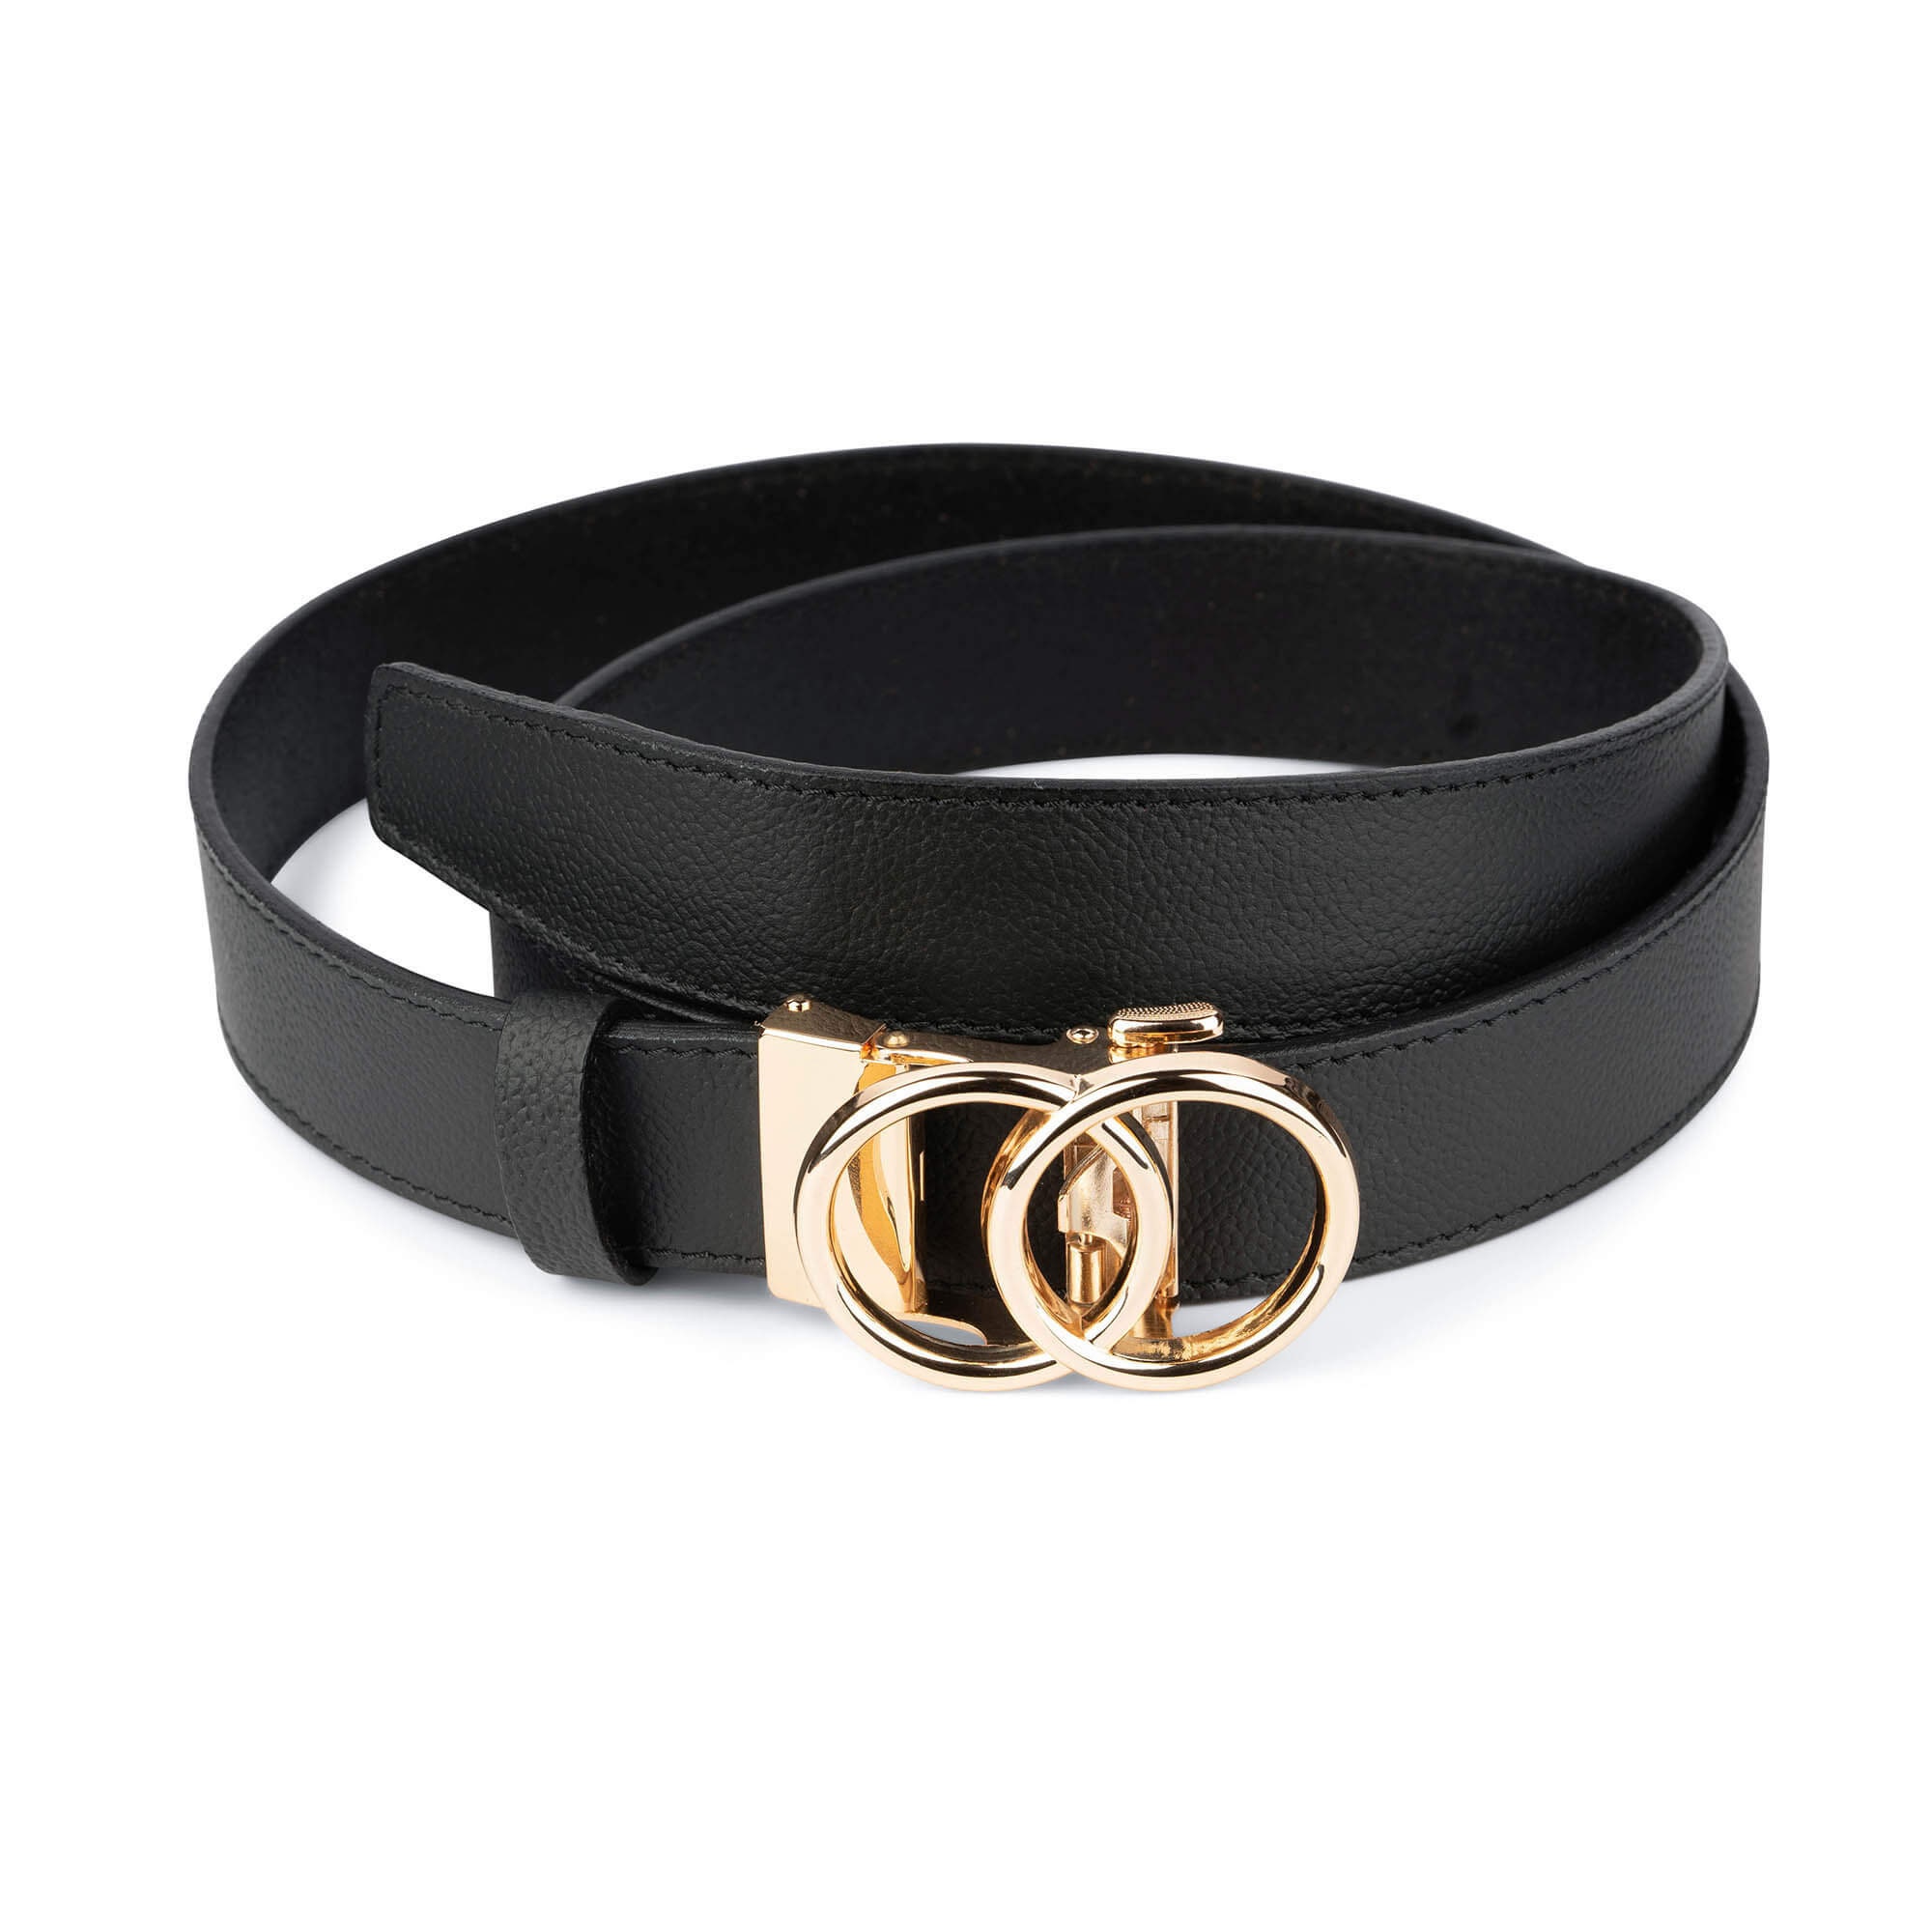 Leather Belt Sliding Buckle Ratchet Hole Less Click Lion Designer Belts For Men 